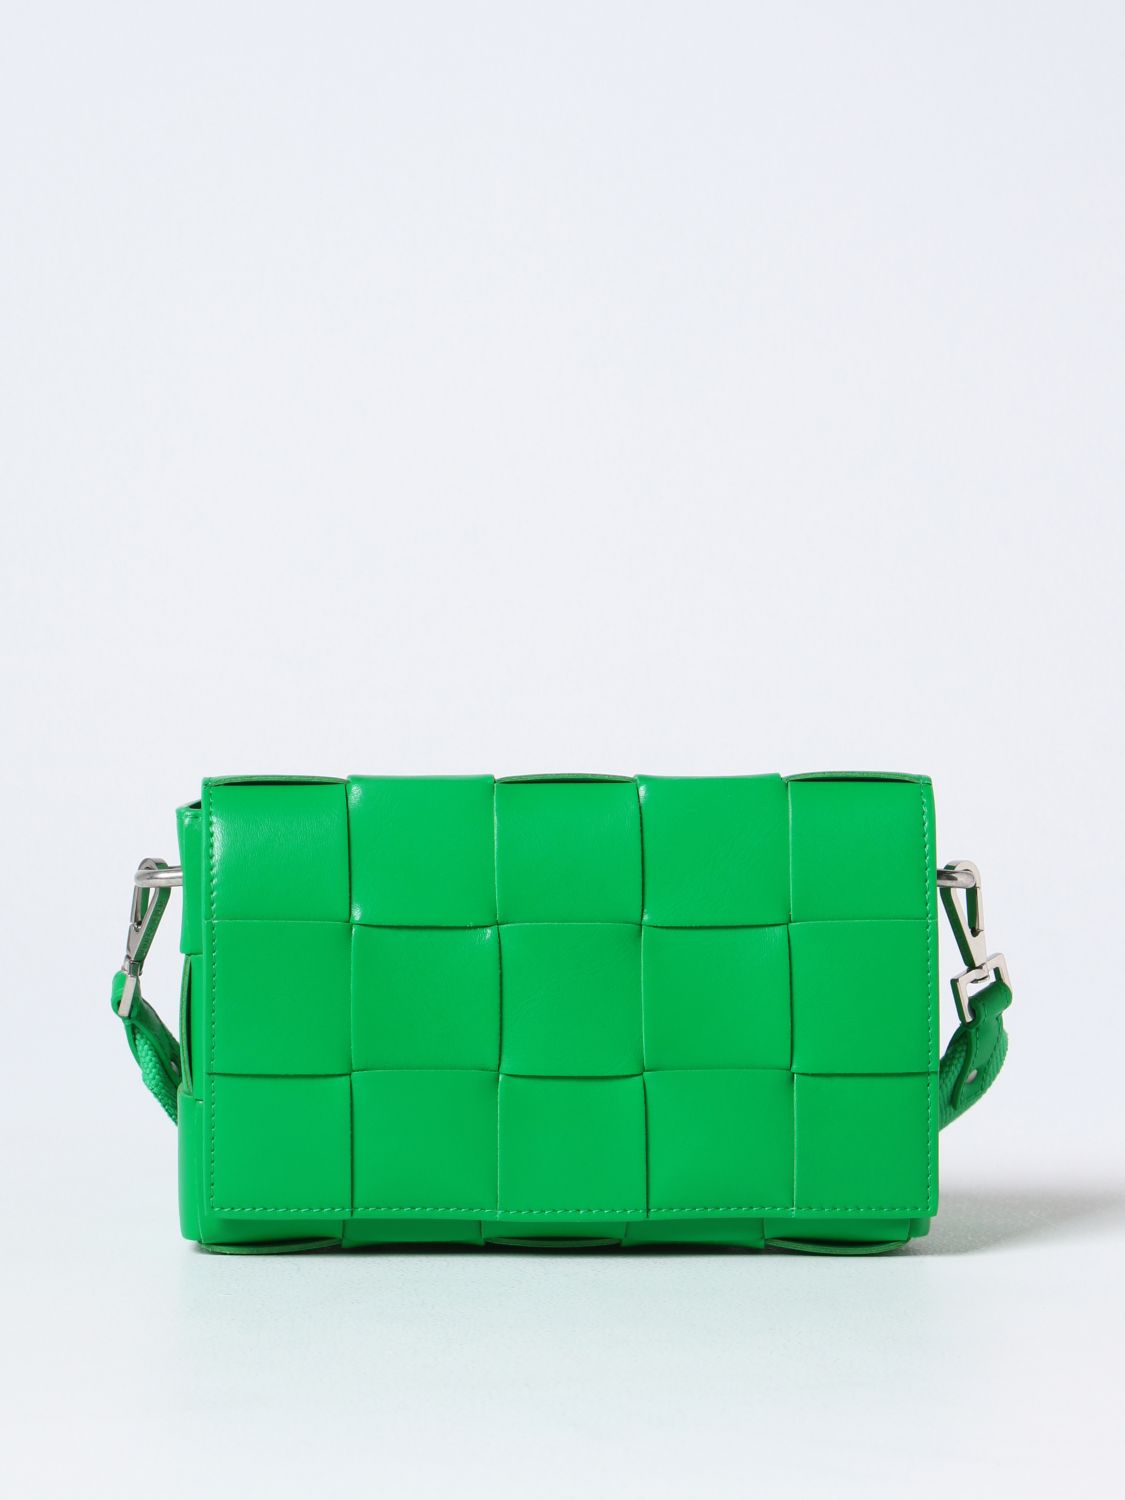 BOTTEGA VENETA: Cassette bag in woven leather - Green | Bottega Veneta ...